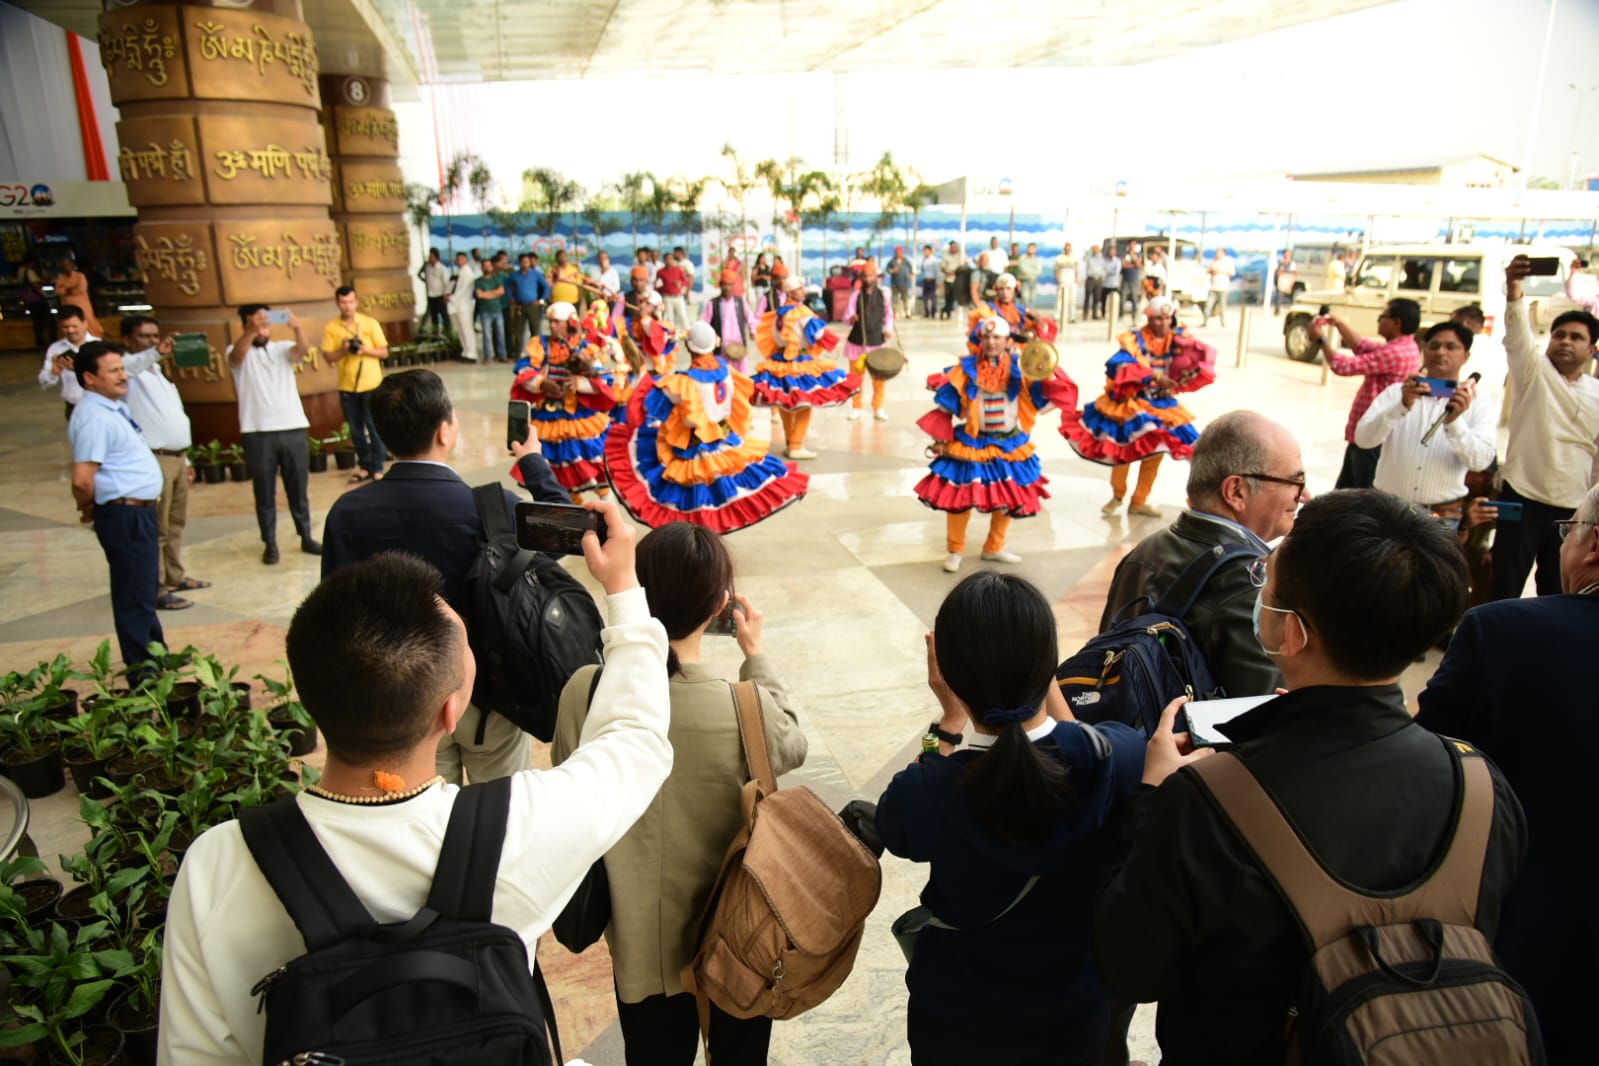 जी-20 बैठक के लिए पहुंचे विदेशी मेहमानों का जौली ग्रांट एयरपोर्ट पर भव्य स्वागत